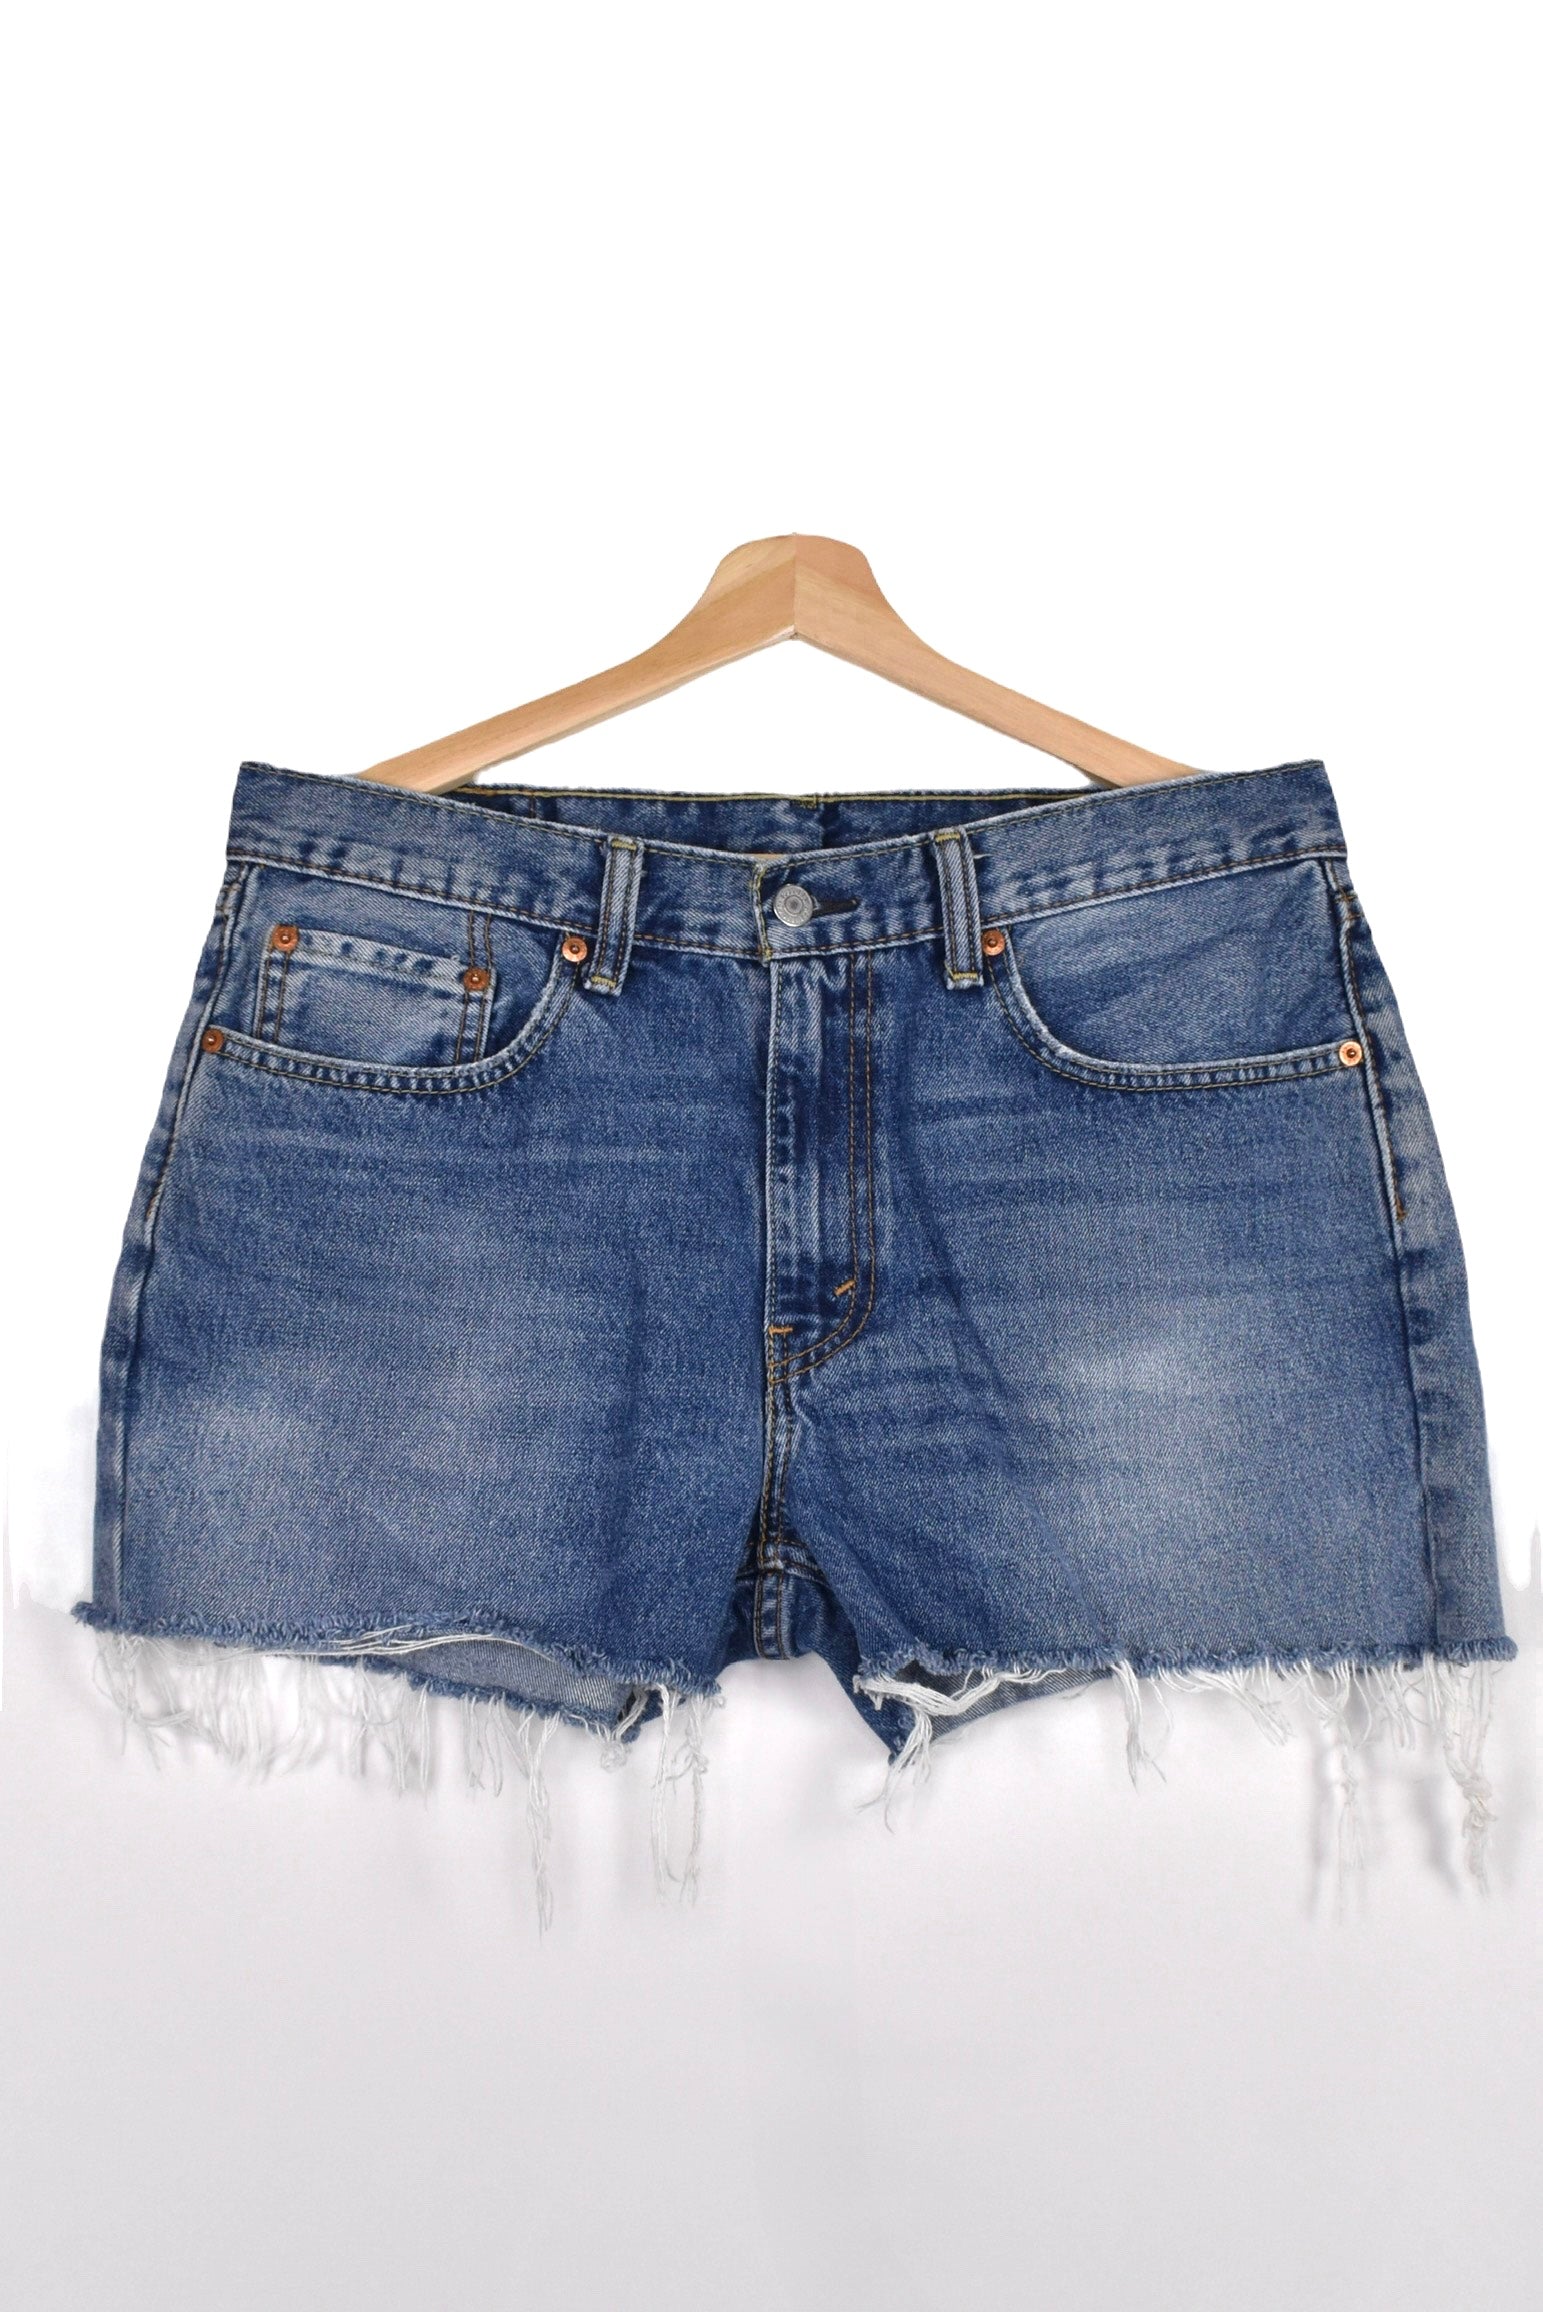 Women's vintage Levi's shorts (W34), blue rework denim jeans